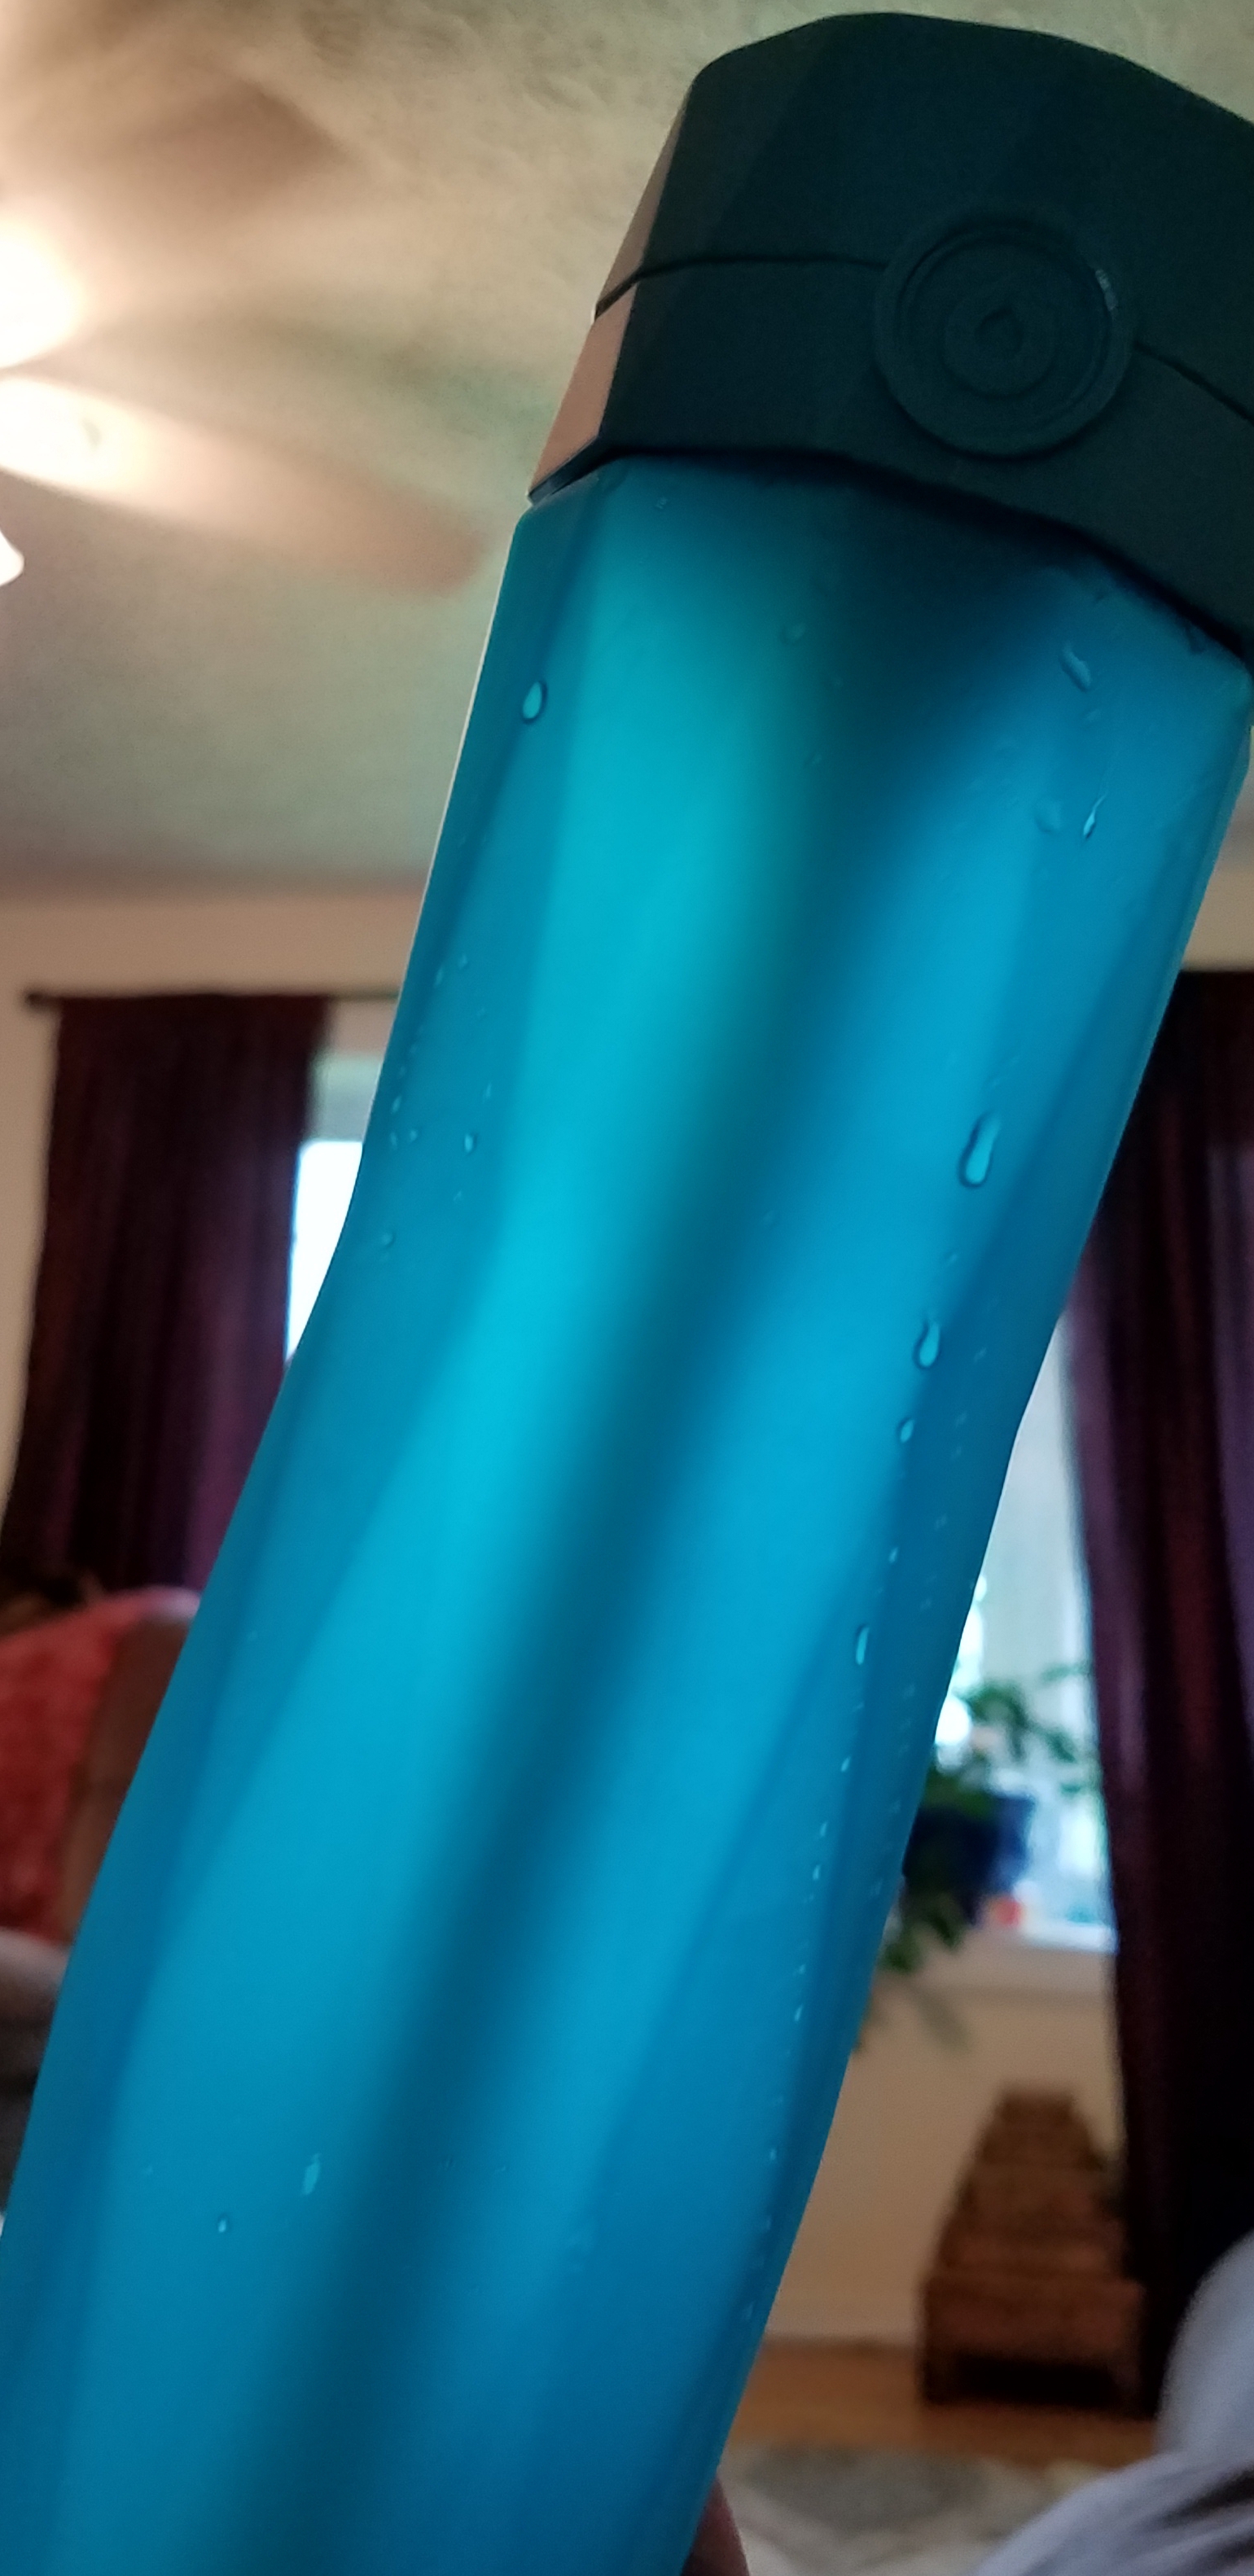 Blue water bottle